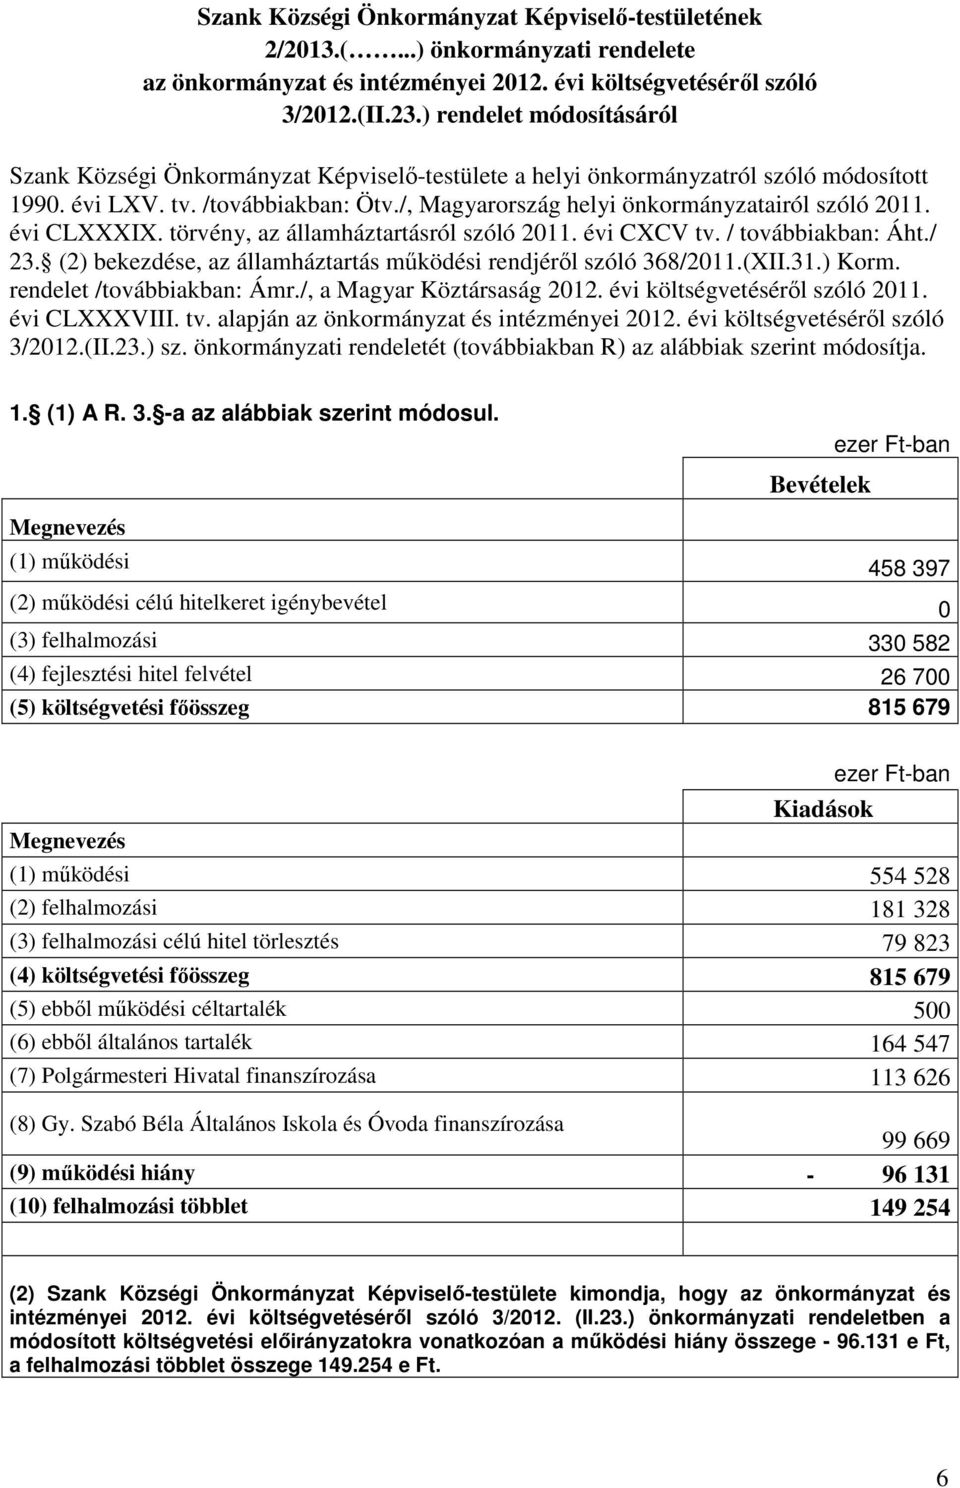 /, Magyarország helyi önkormányzatairól szóló 2011. évi CLXXXIX. törvény, az államháztartásról szóló 2011. évi CXCV tv. / továbbiakban: Áht./ 23.